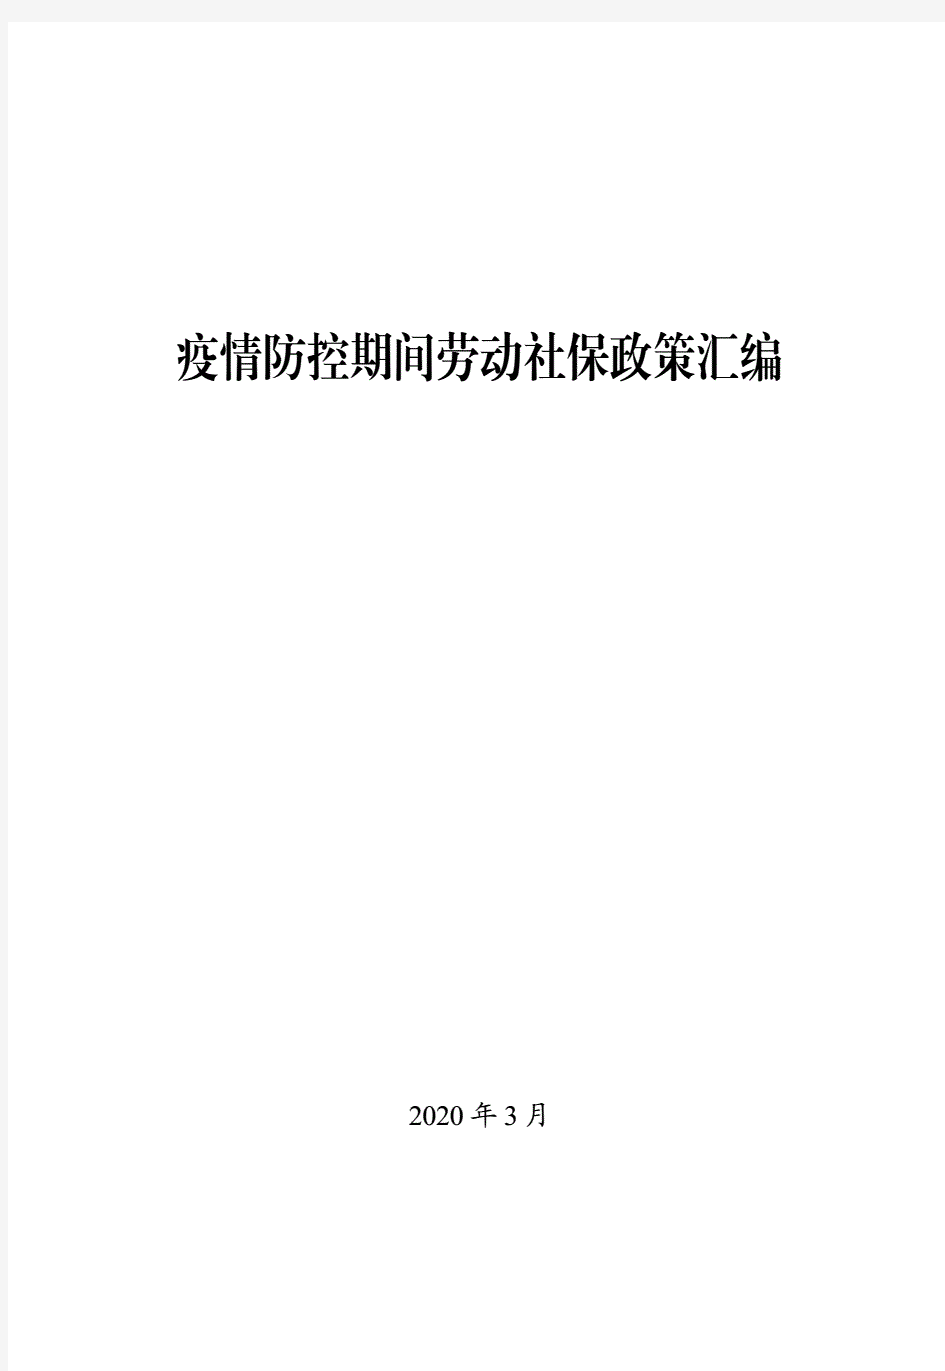 疫情防控期间劳动社保政策汇编.pdf